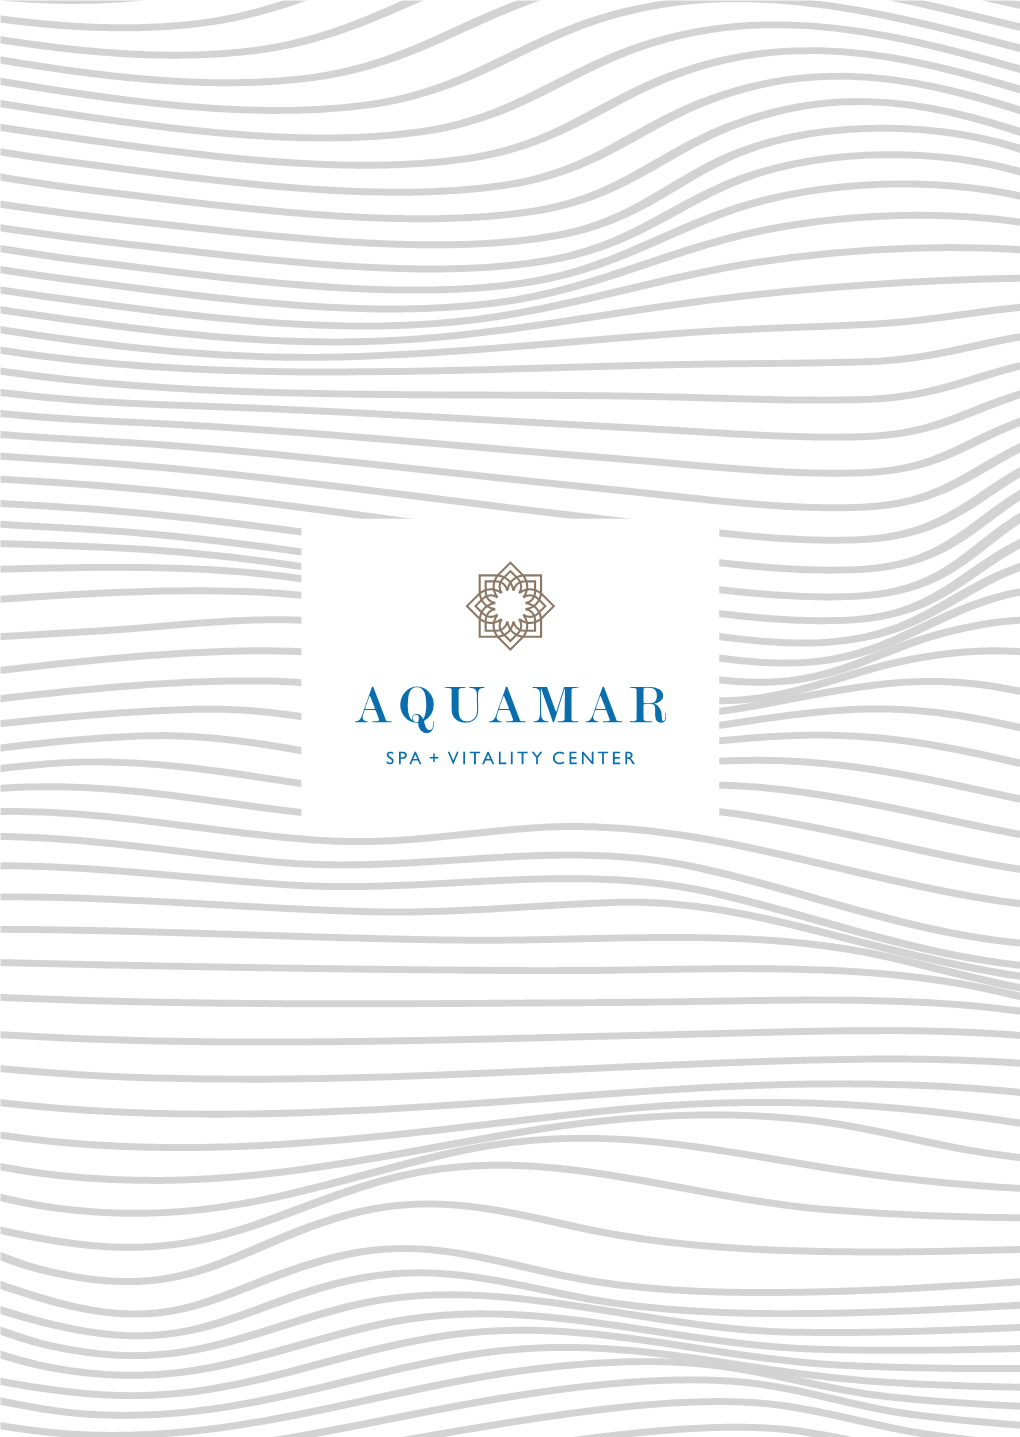 971685 Oceania Aquamar Brochure COVER Jb